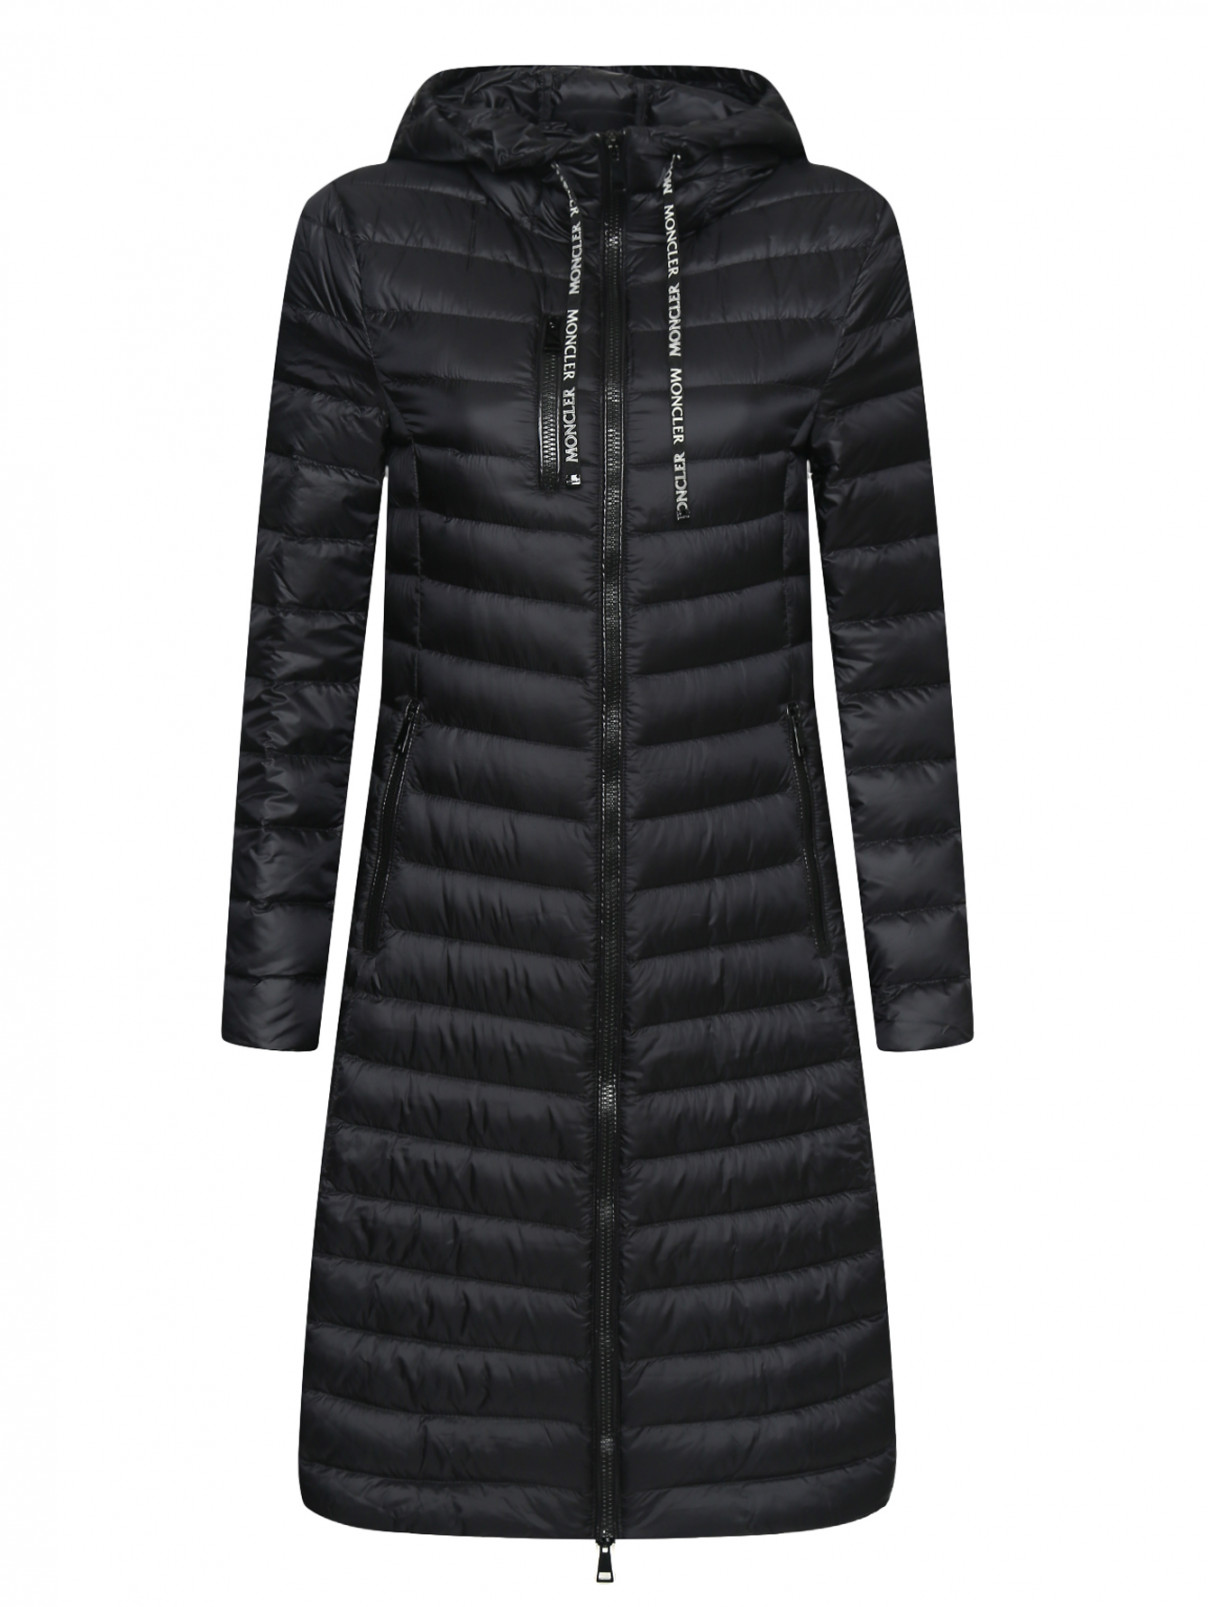 Пуховое пальто с капюшоном на молнии Moncler  –  Общий вид  – Цвет:  Черный